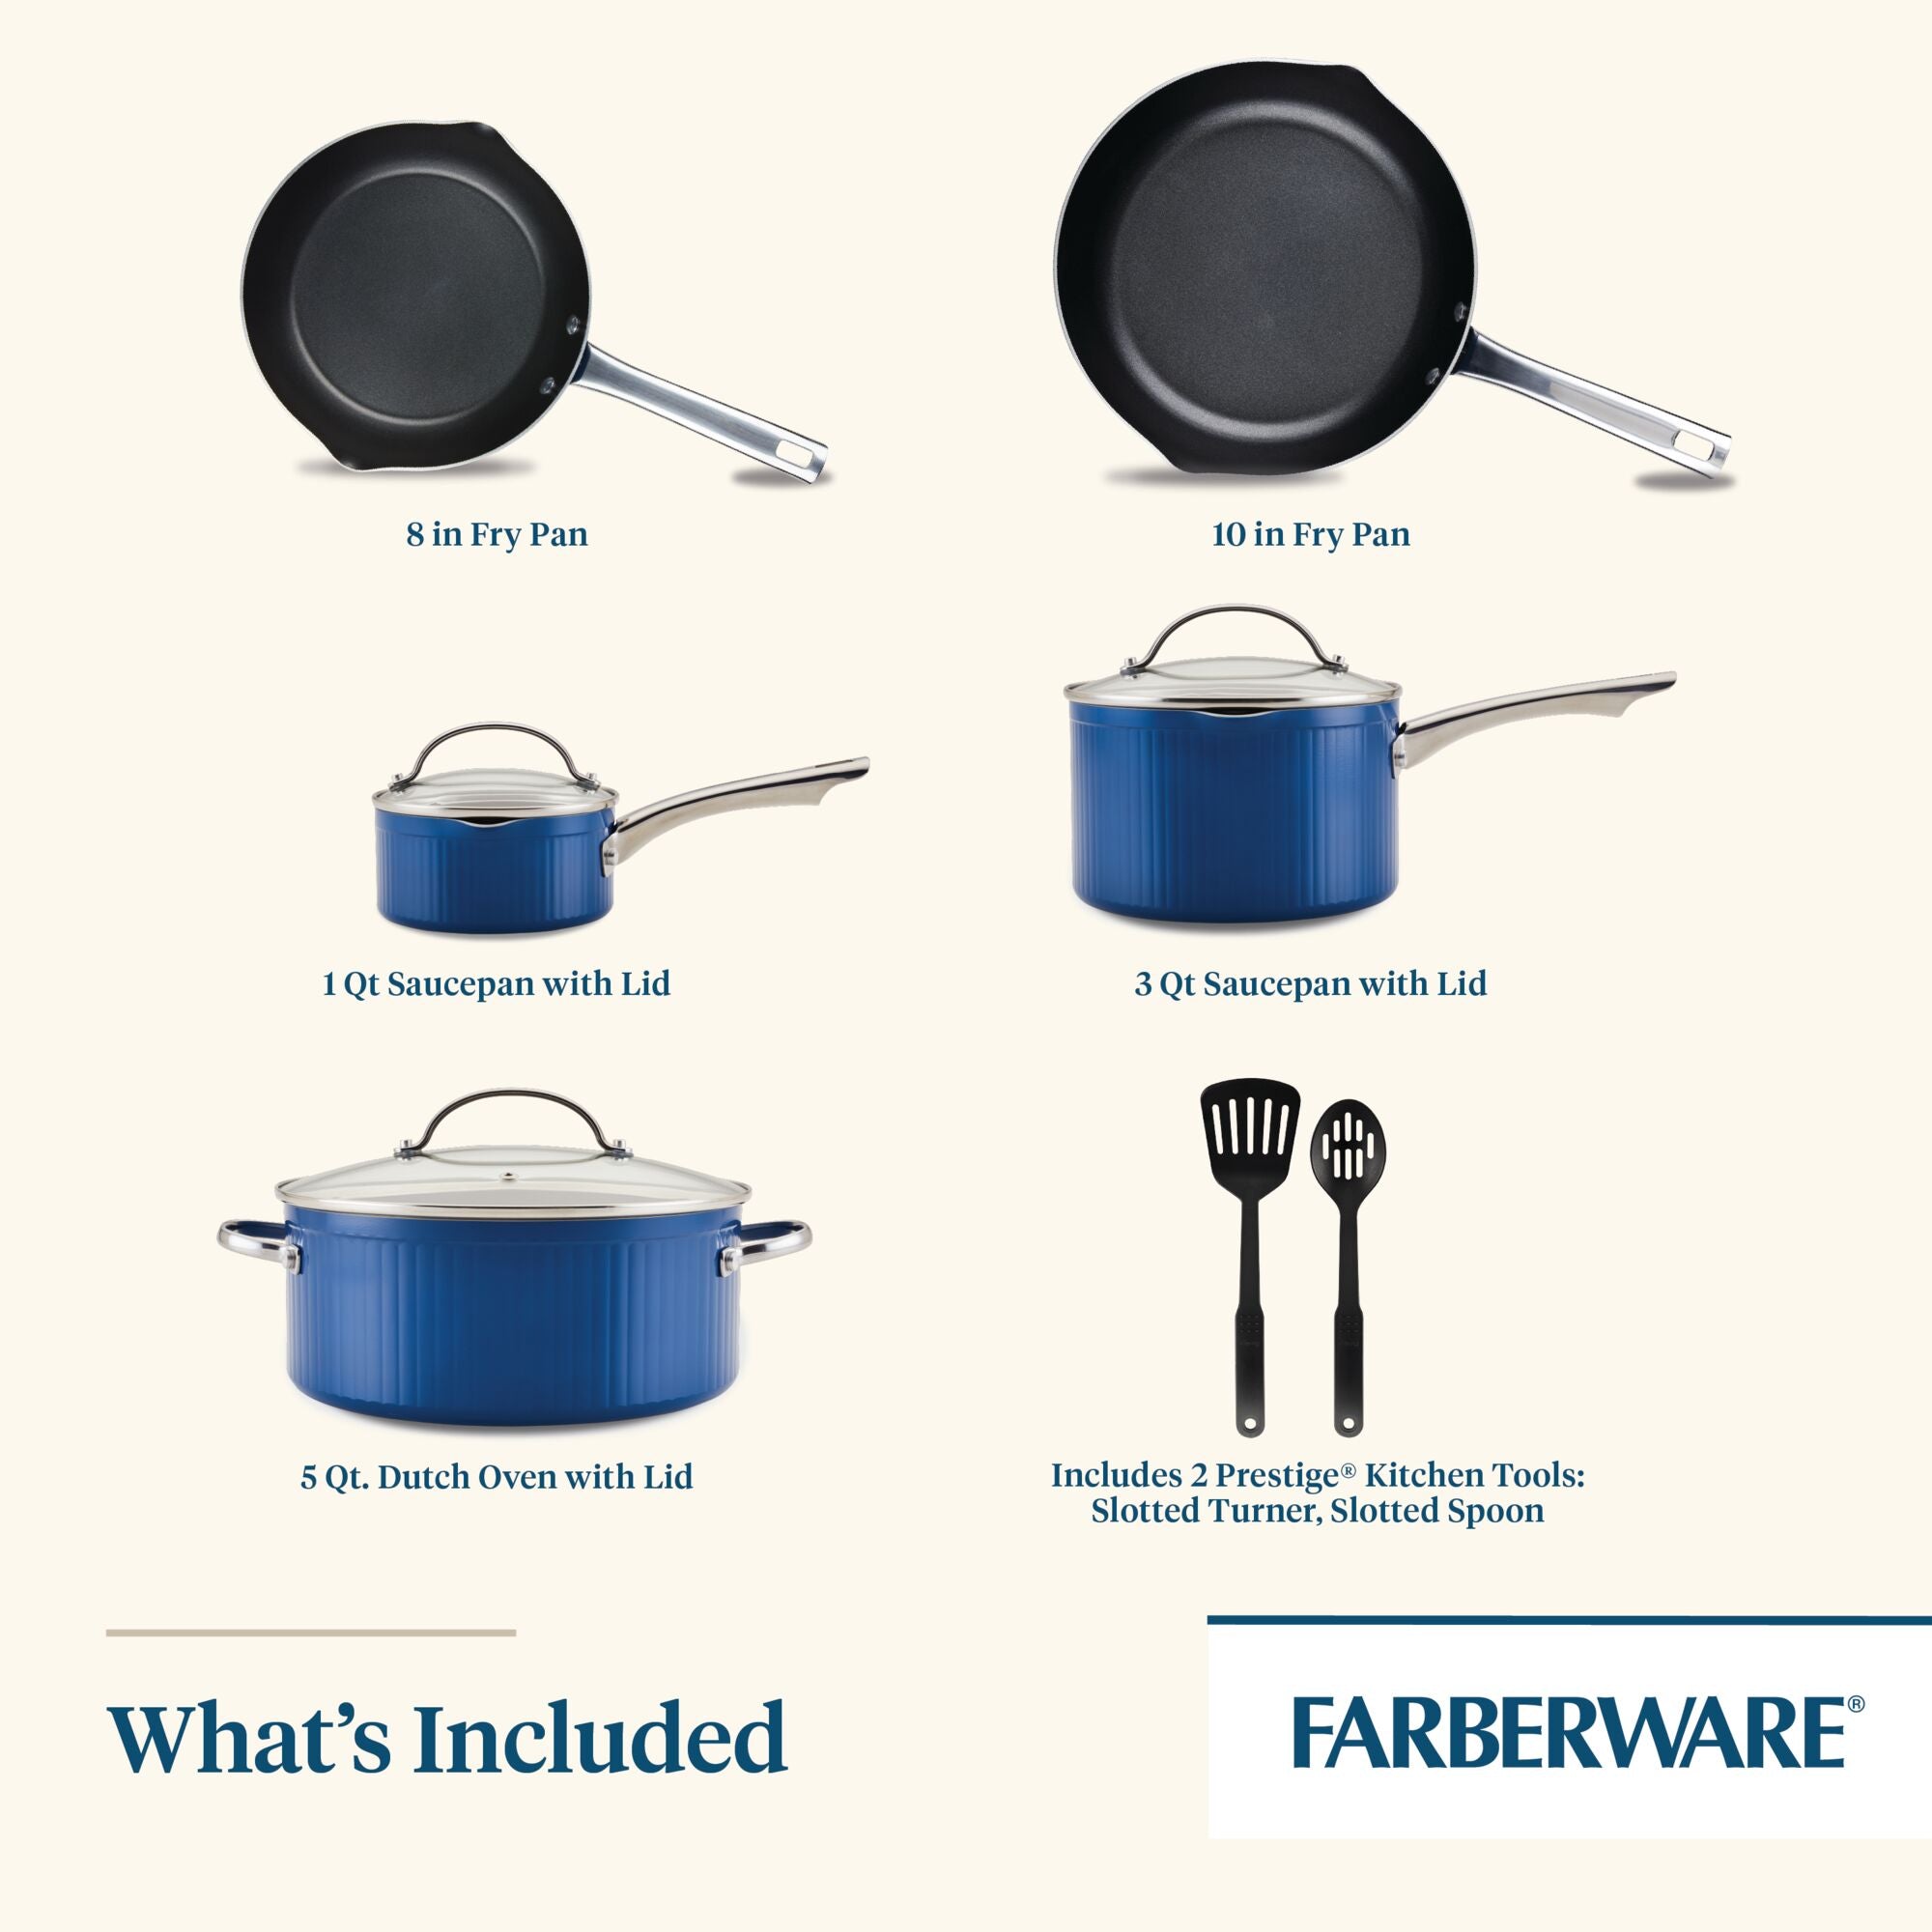 Farberware 10 Ceramic Frying Pan